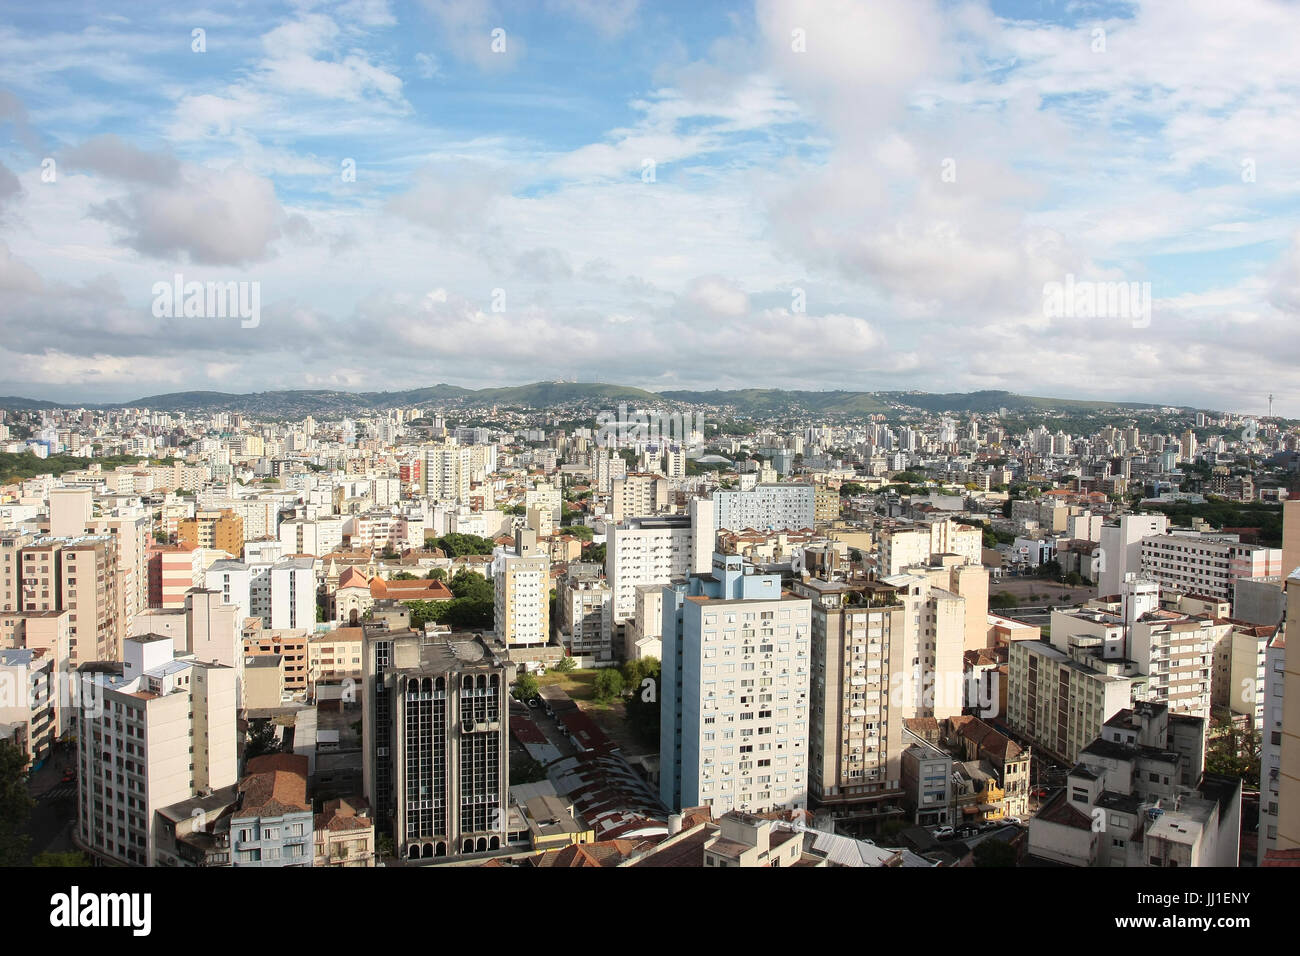 Aerial view, city, Porto Alegre, Rio Grande do Sul, Brazil. Stock Photo